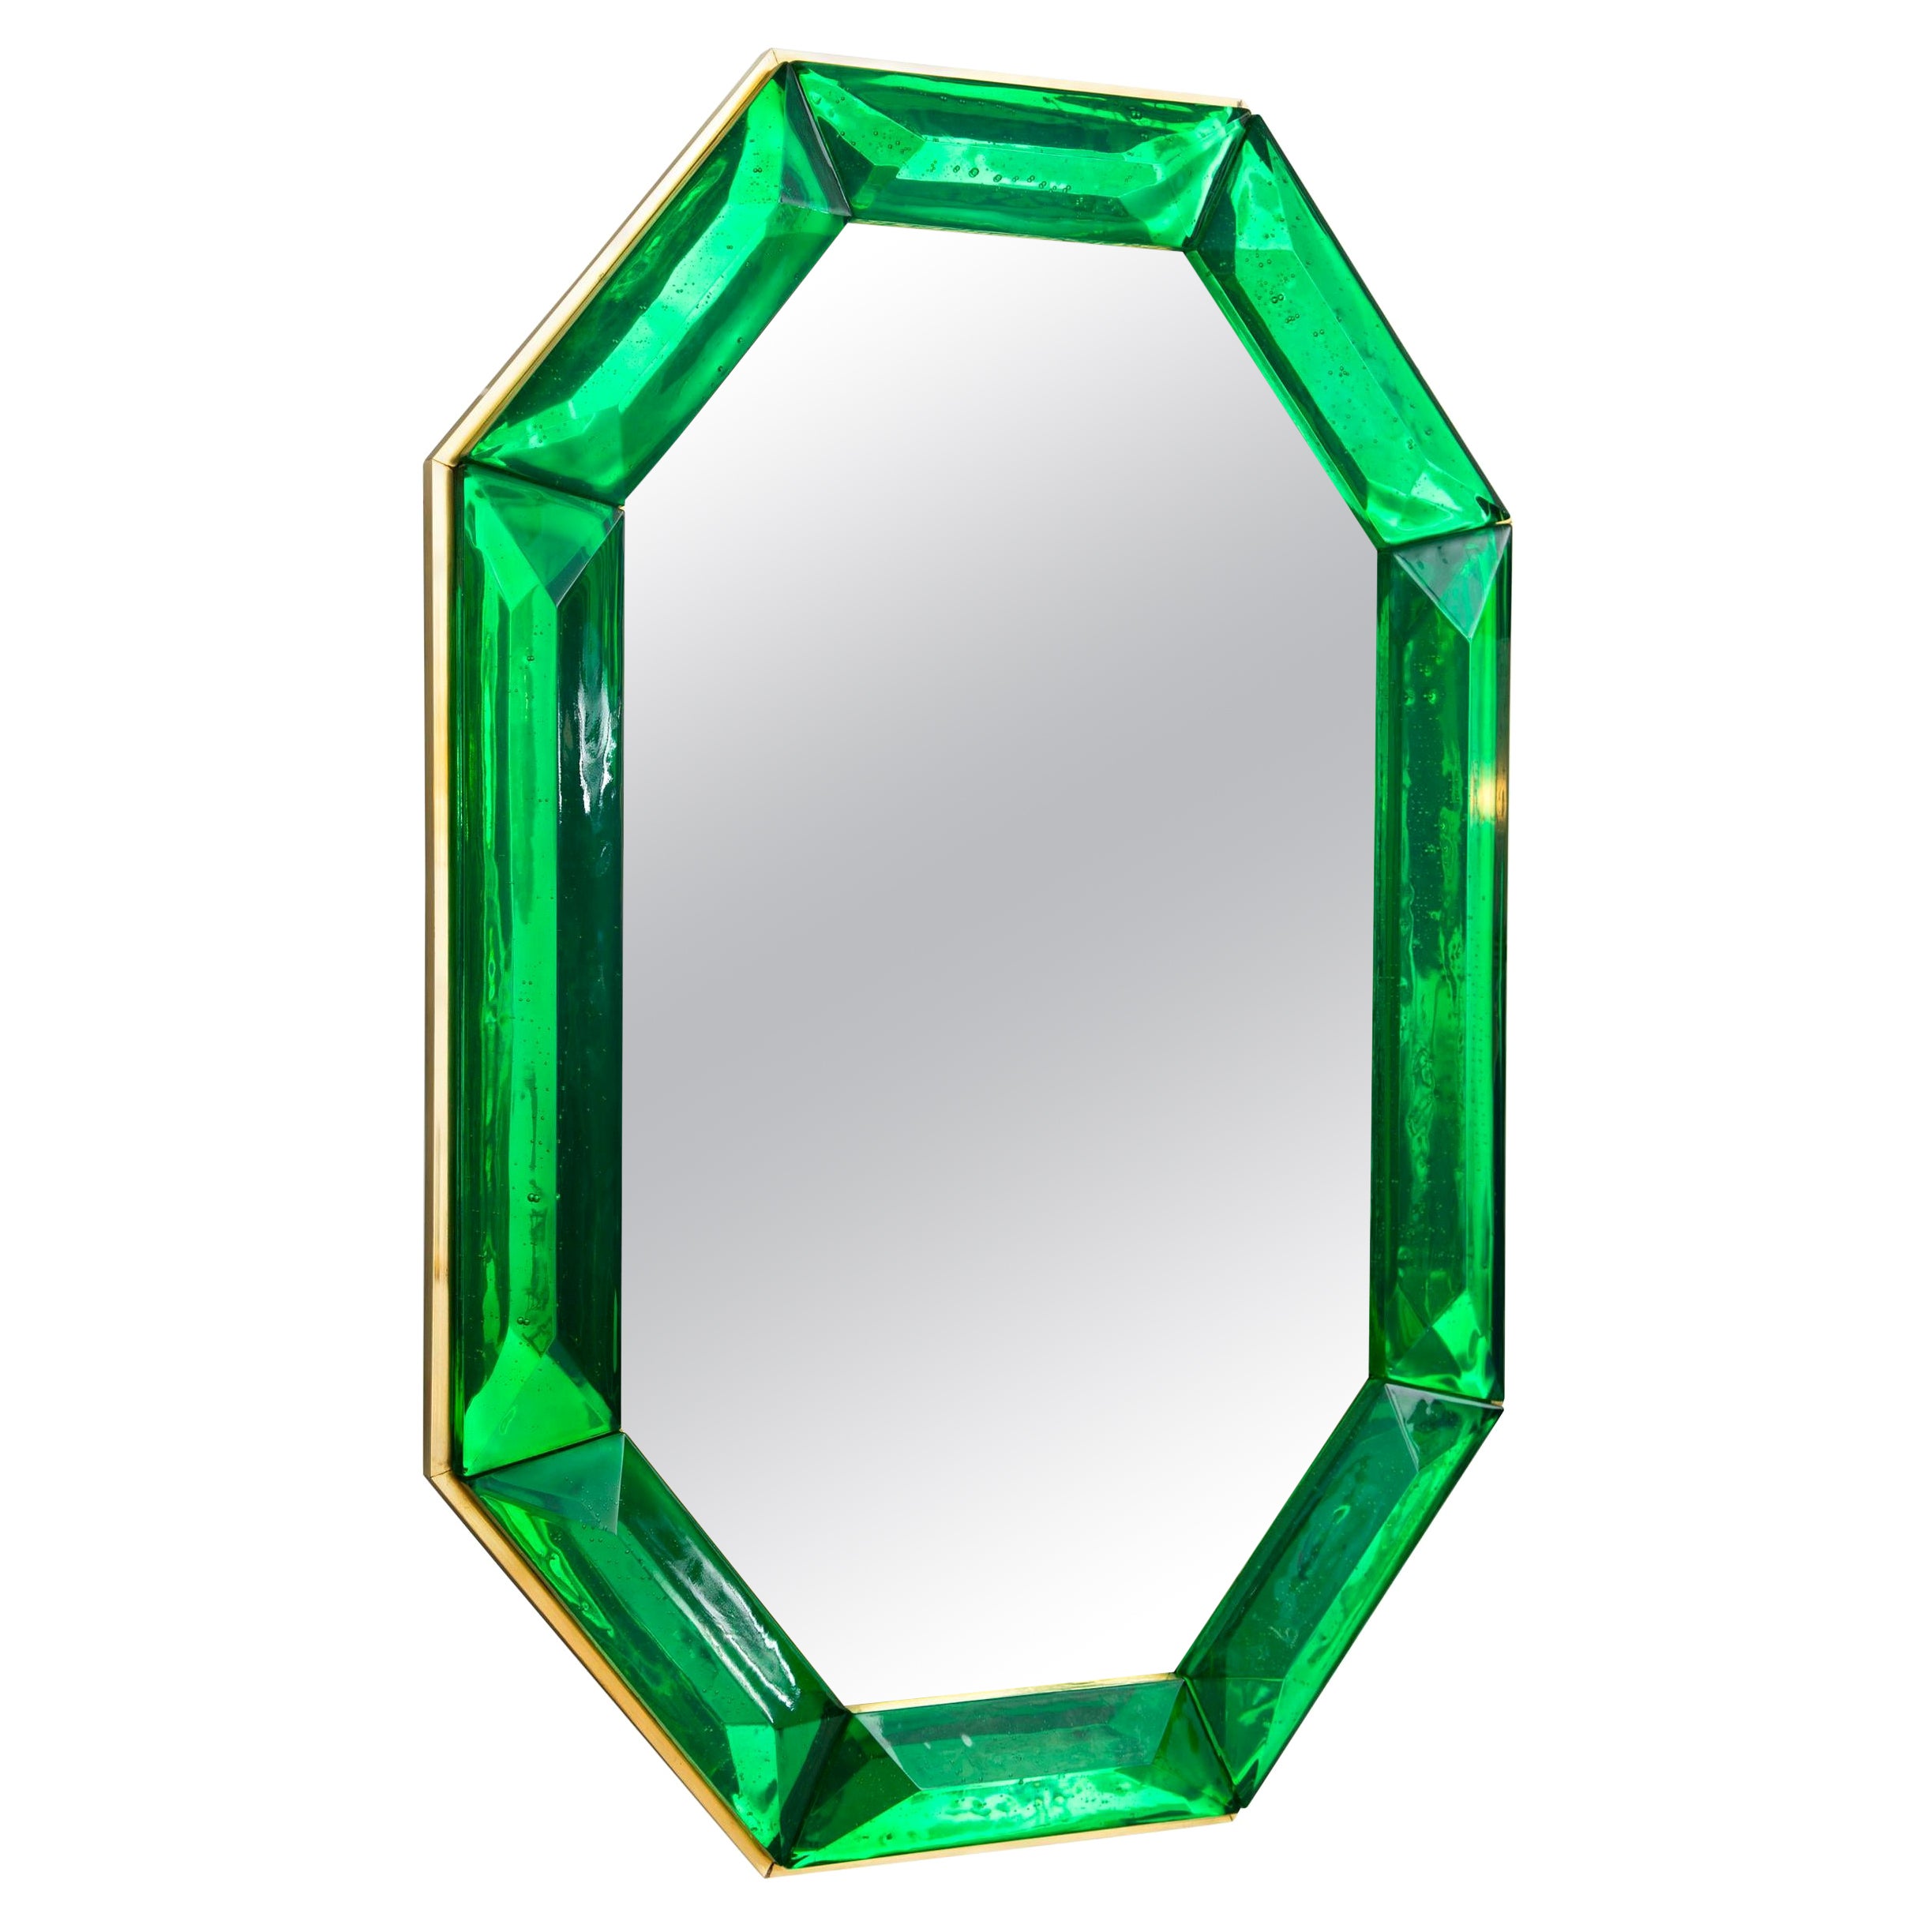 Miroir octogonal en verre de Murano vert émeraude sur mesure, en stock